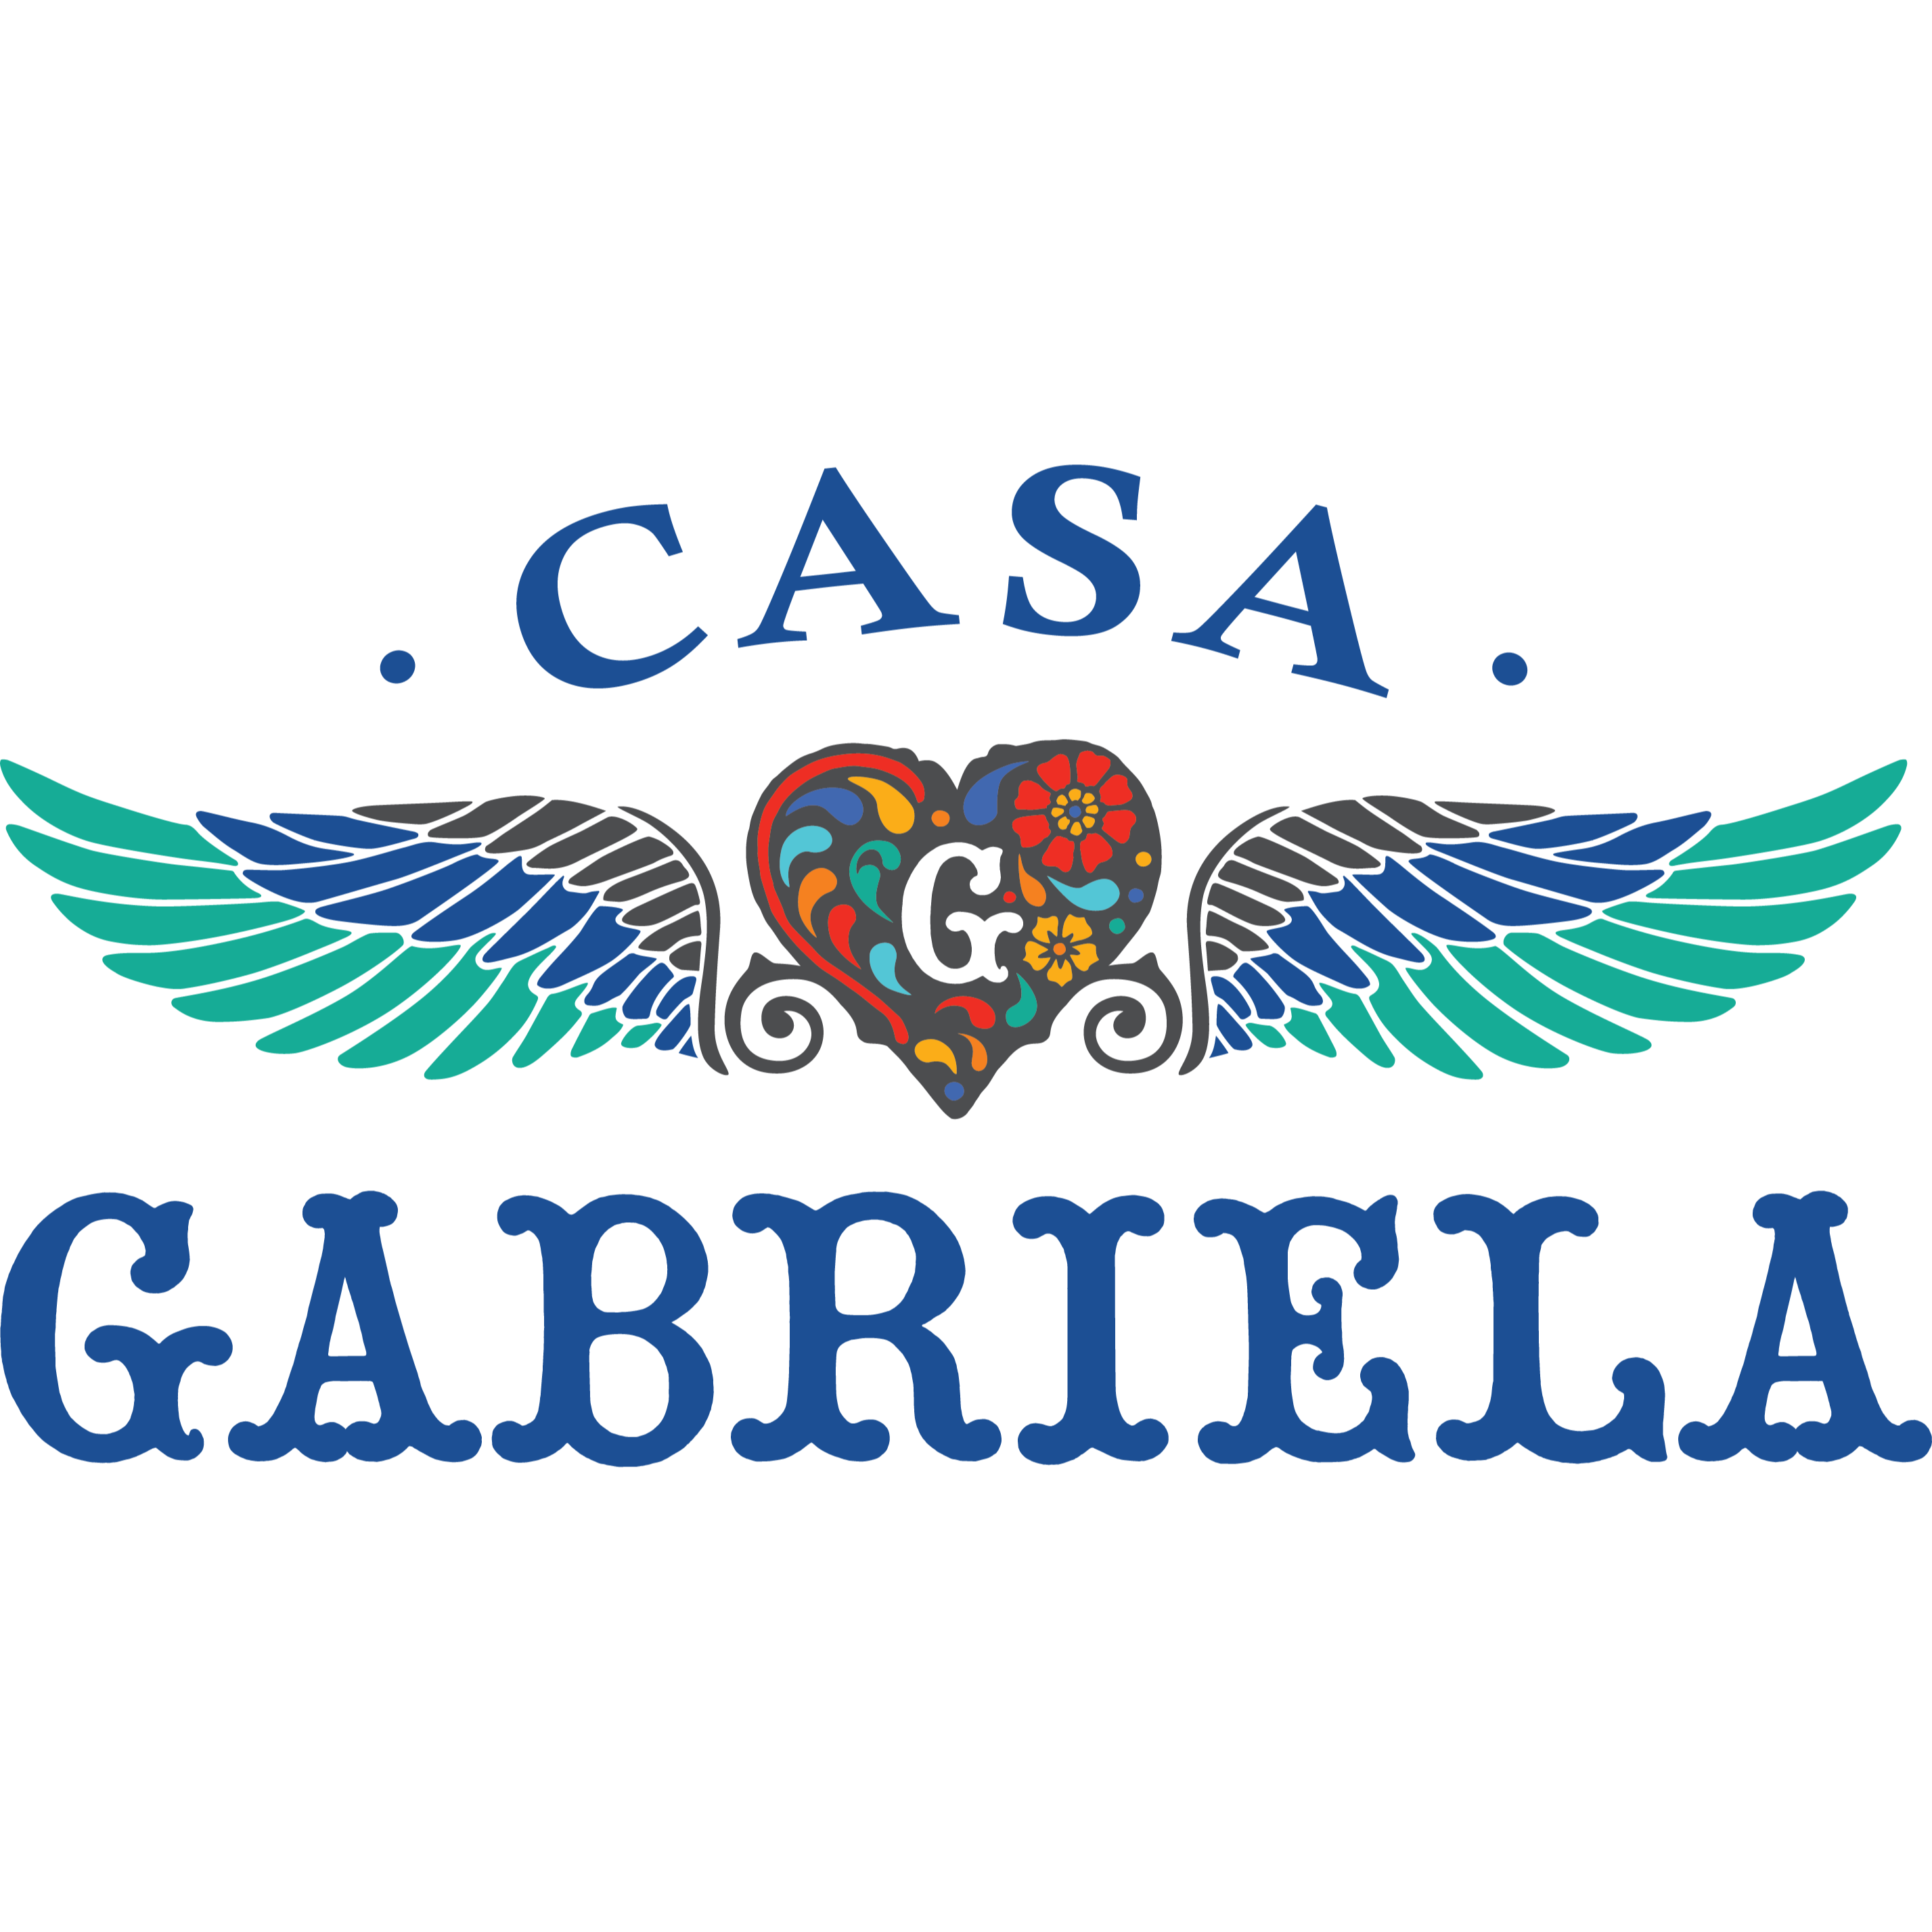 Casa Gabriela - La Mesa, CA 91942 - (619)337-3445 | ShowMeLocal.com